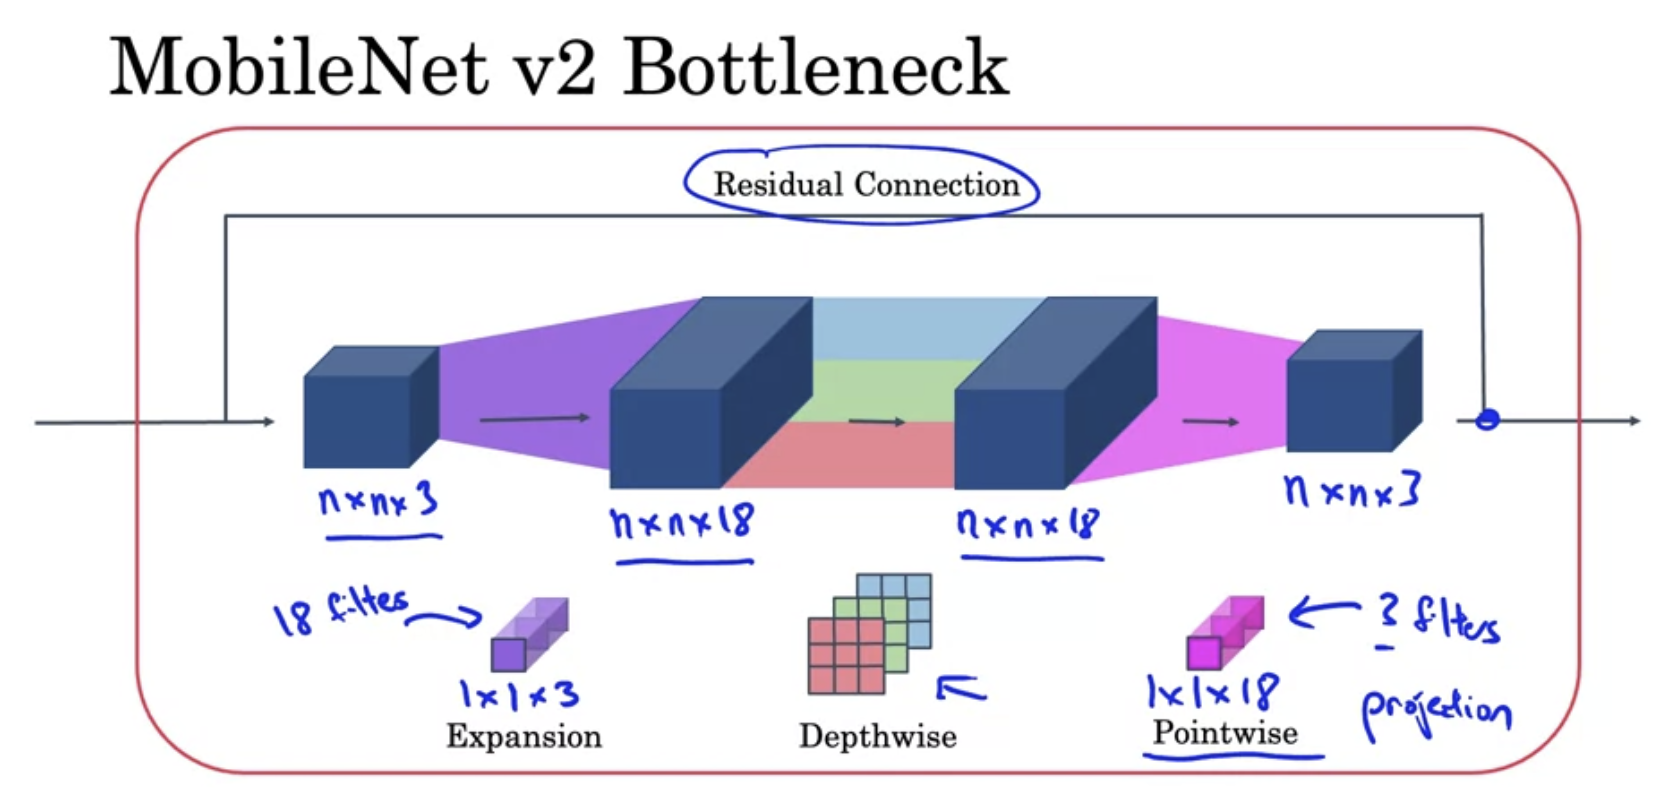 MobileNet v2 Bottleneck